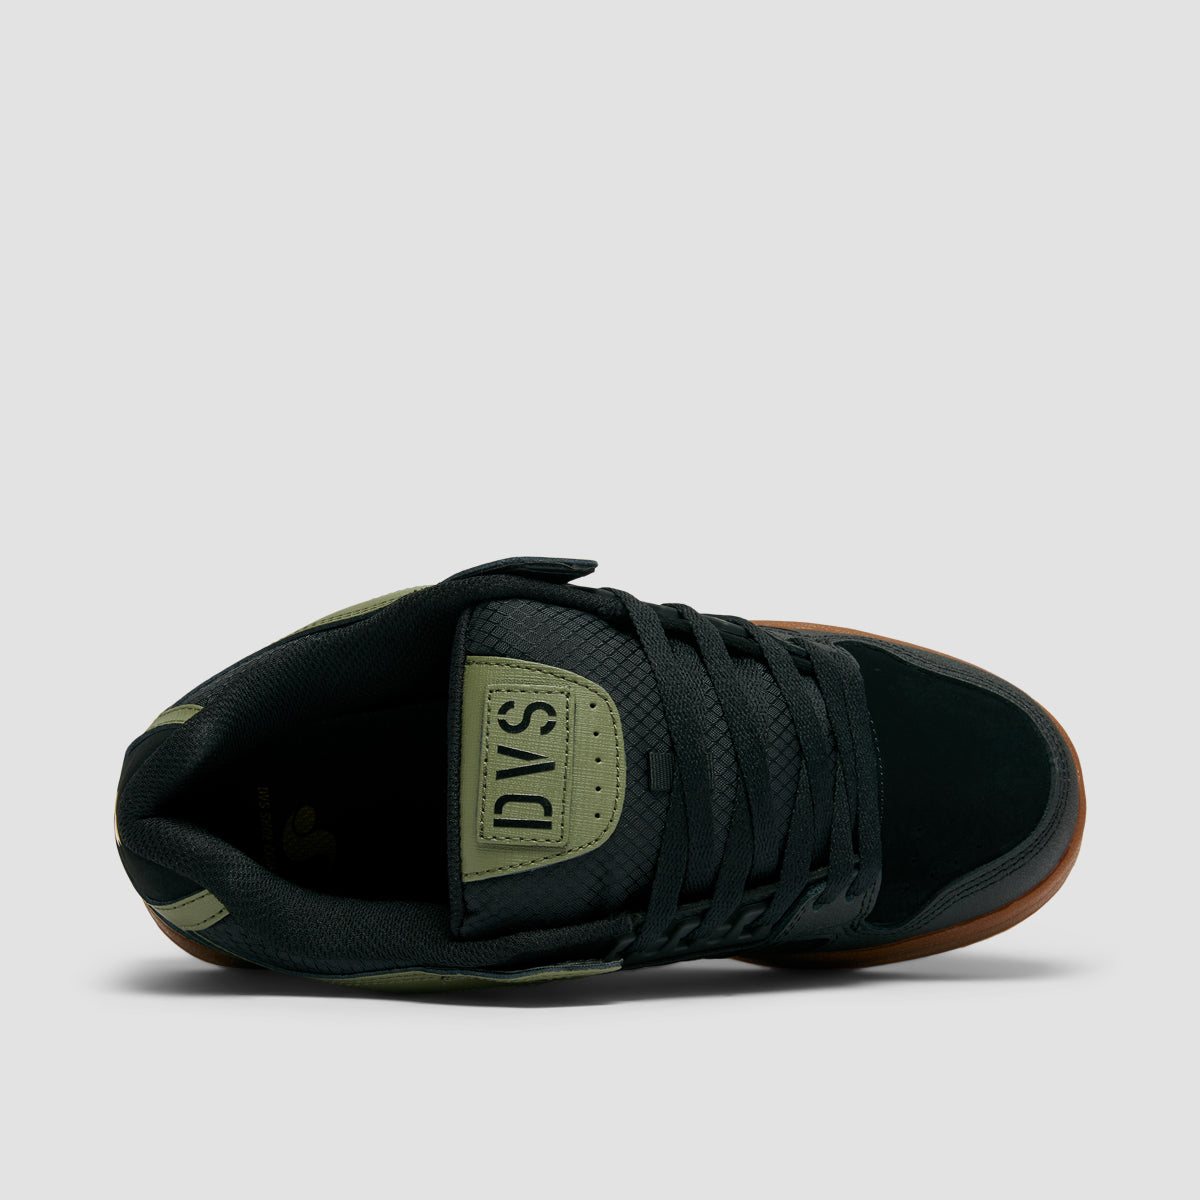 DVS Celsius Shoes - Black/Olive/Gum Nubuck